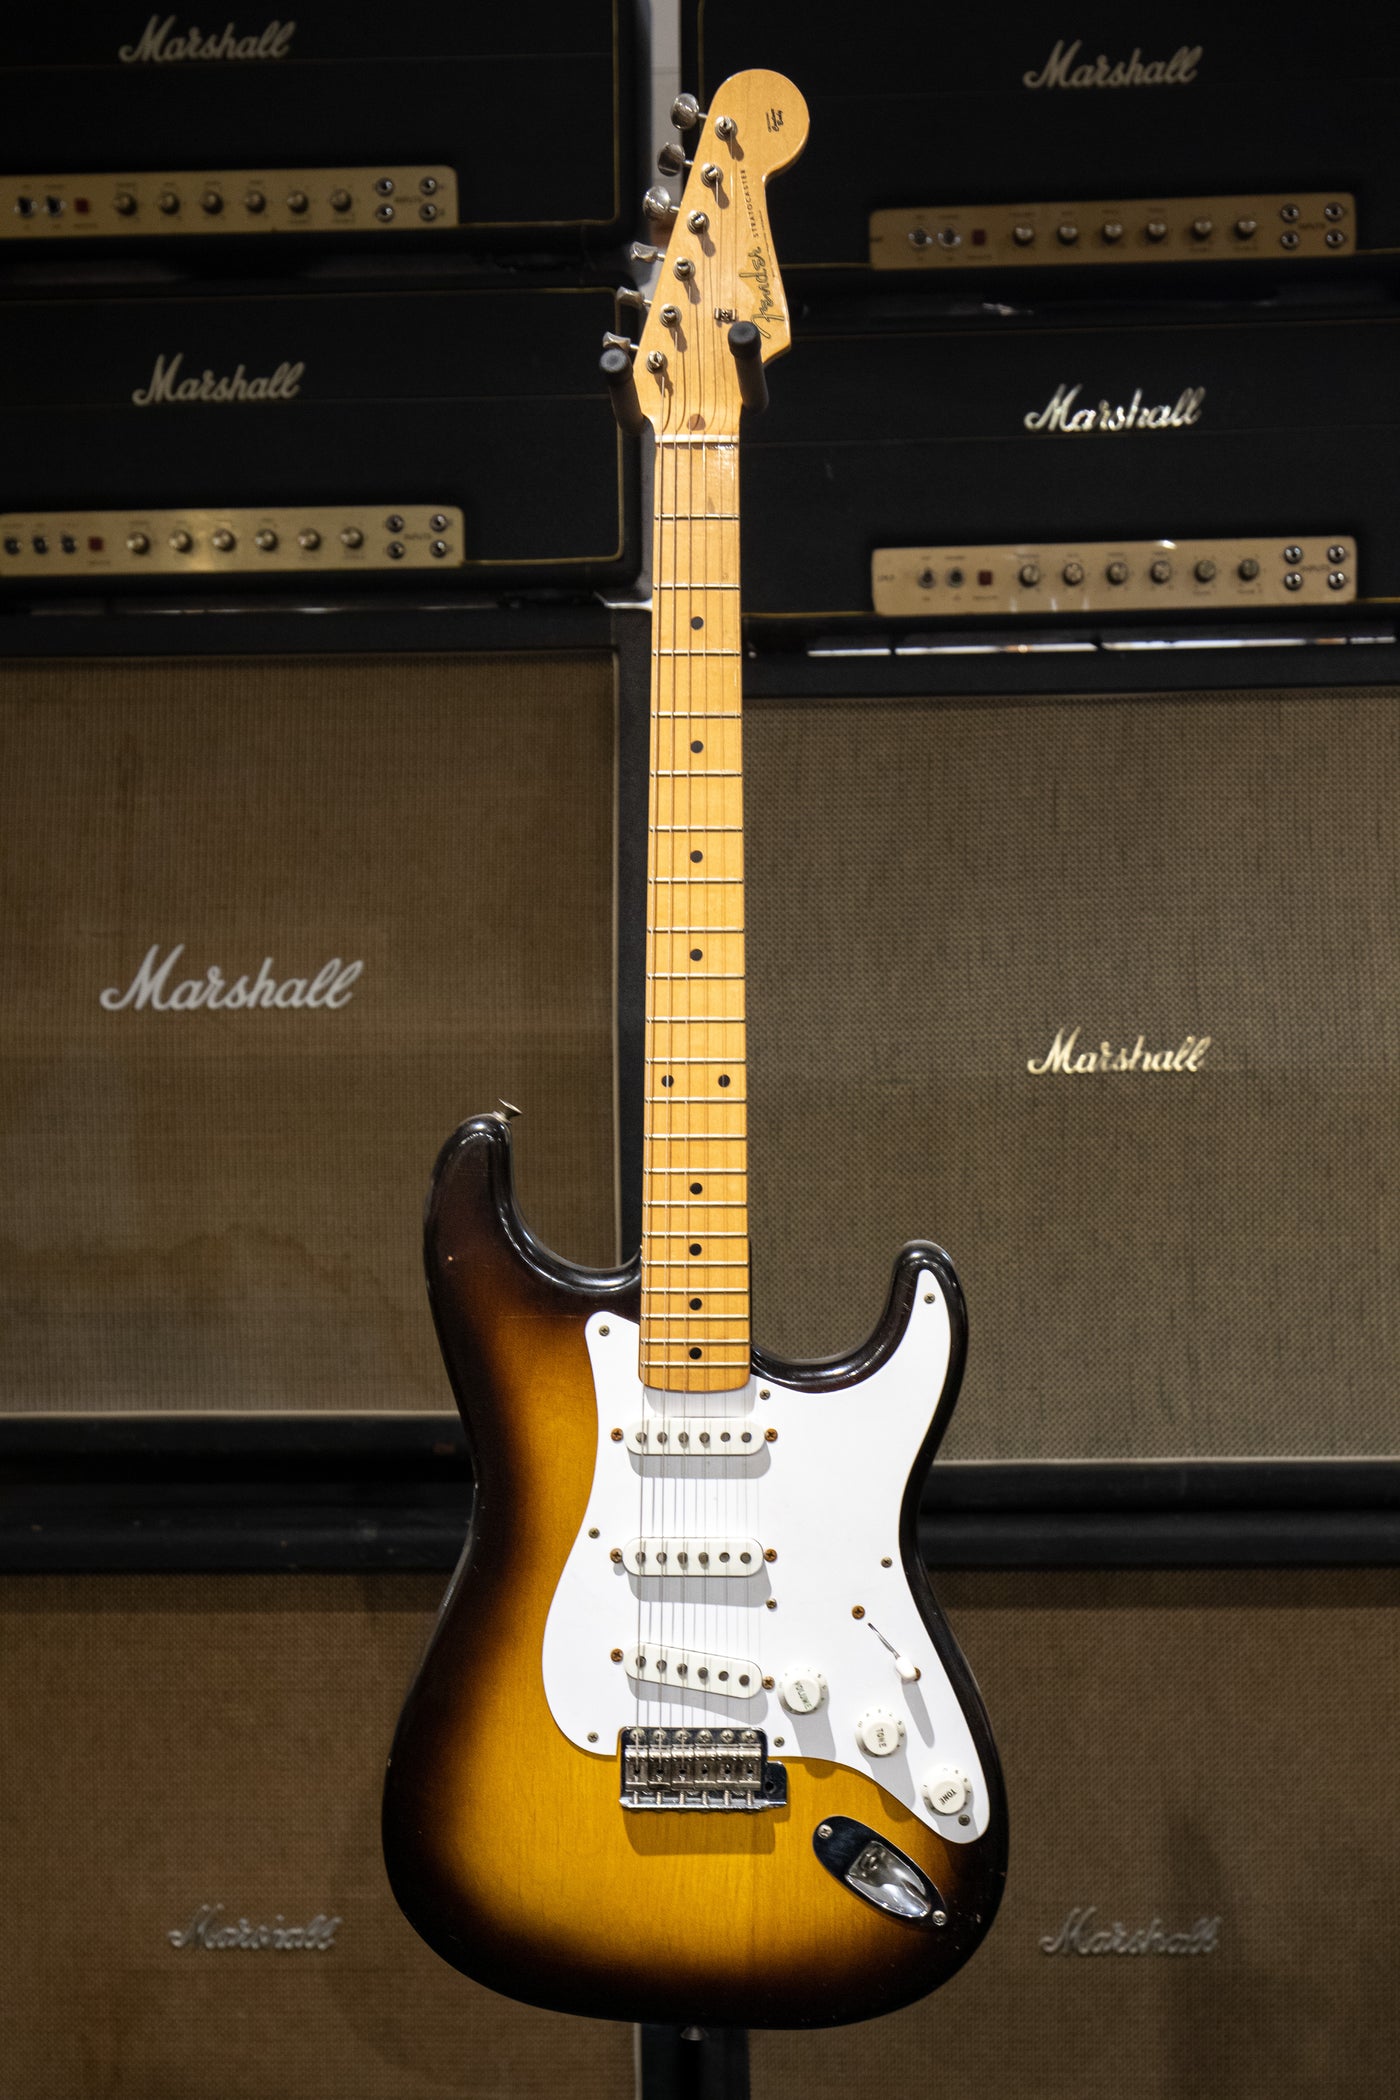 1957 Fender Stratocaster  - Sunburst